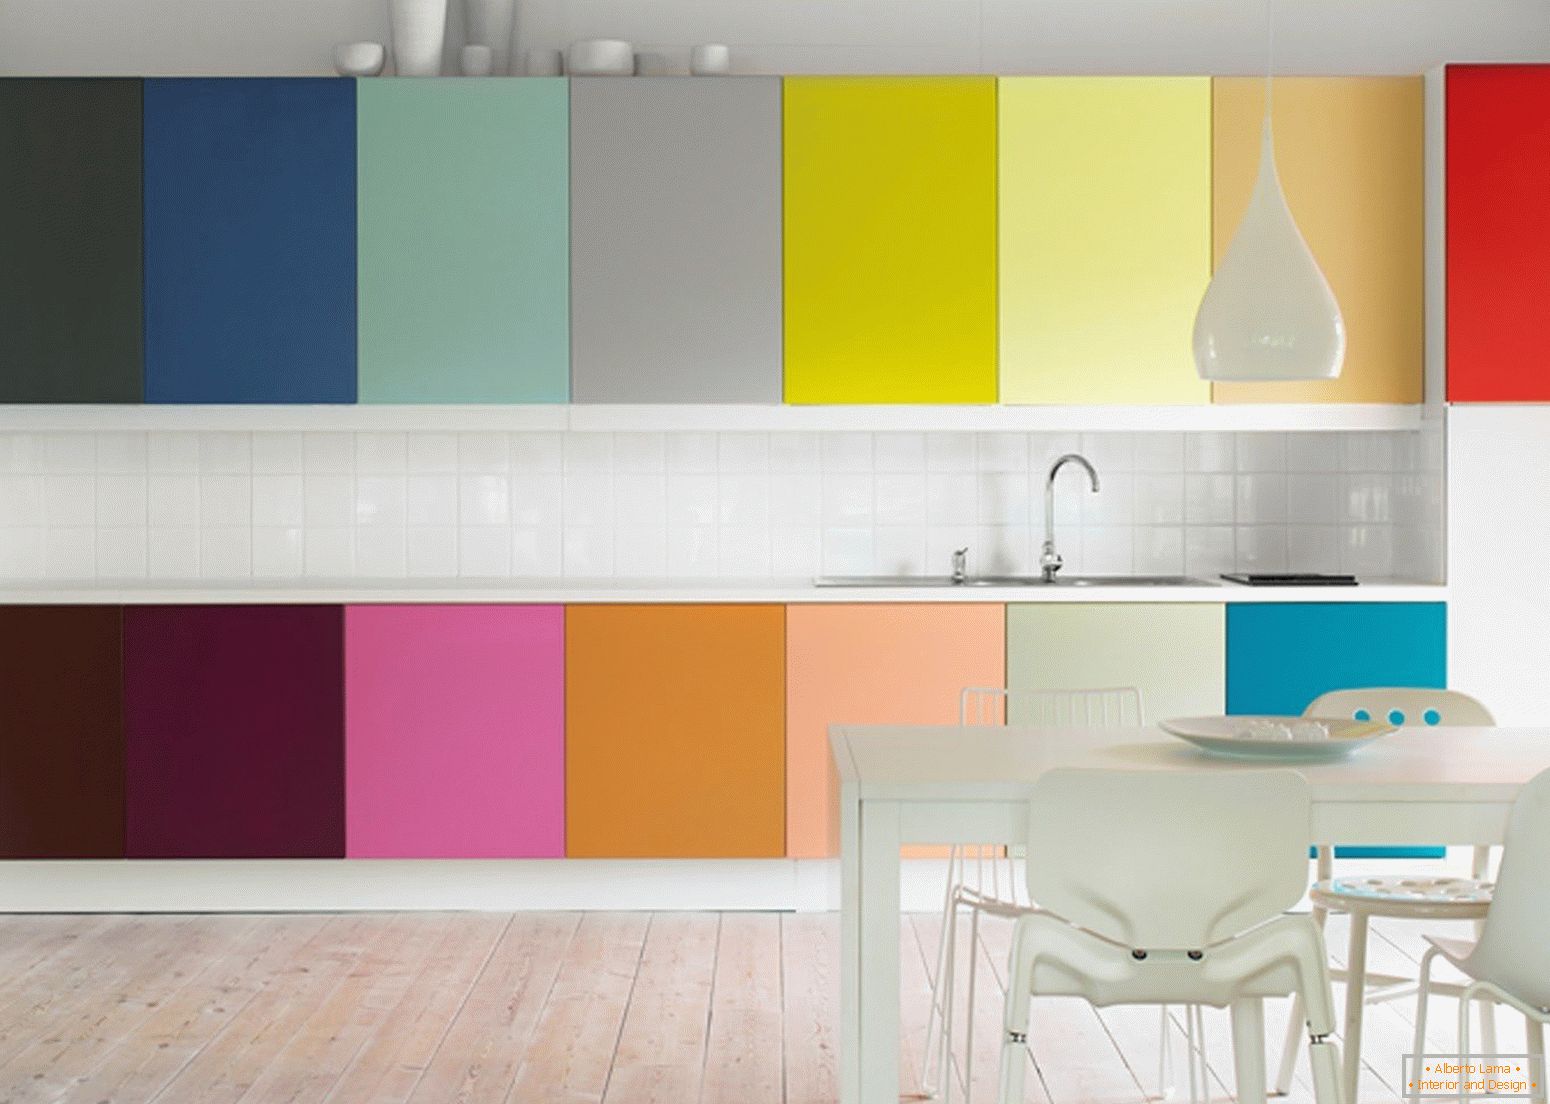 Schemat kolorów w kuchni